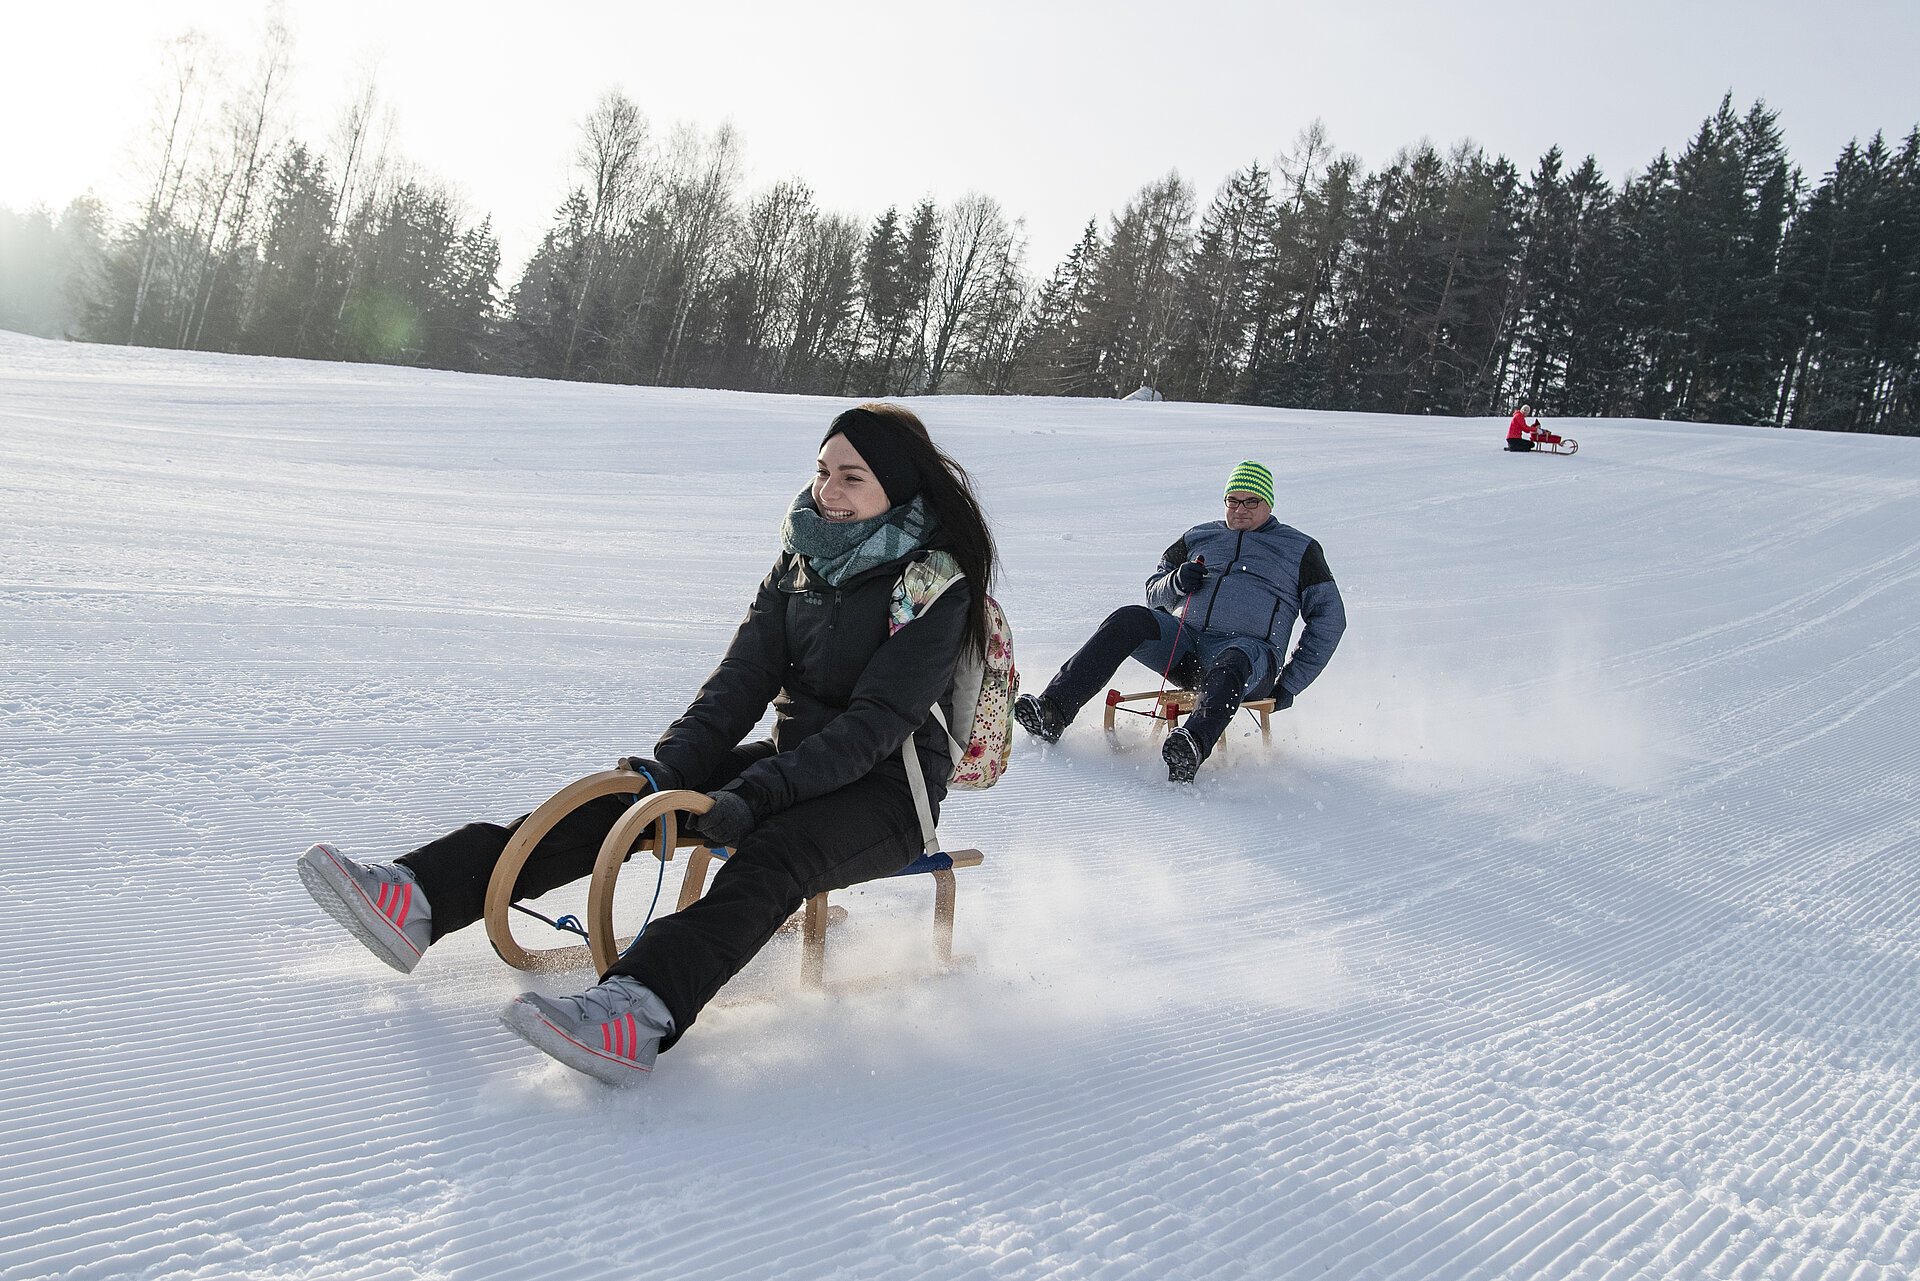 Blick auf den Rodelhang. Drei Personen fahren mit dem Schlitten ab. Dabei stiebt der Schnee auf.